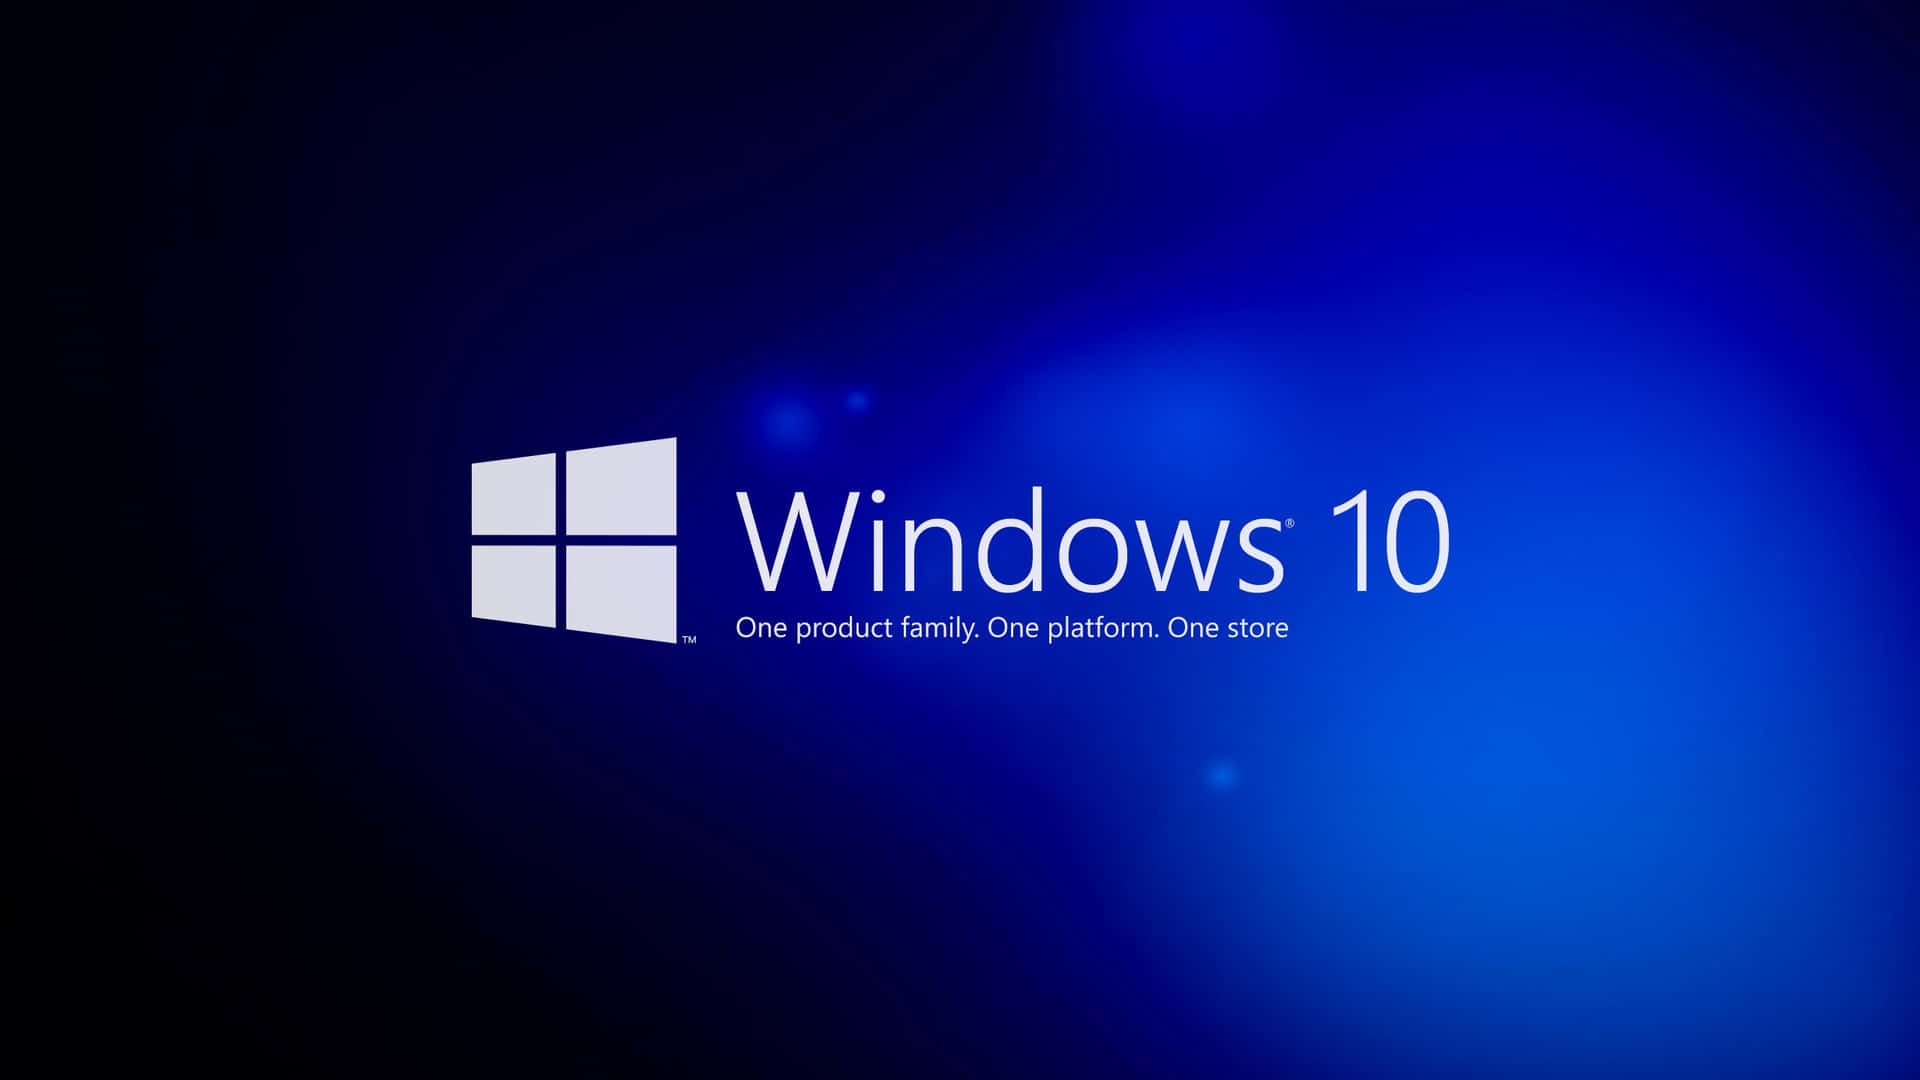 Get a Sleek and Modern Desktop with Windows 10